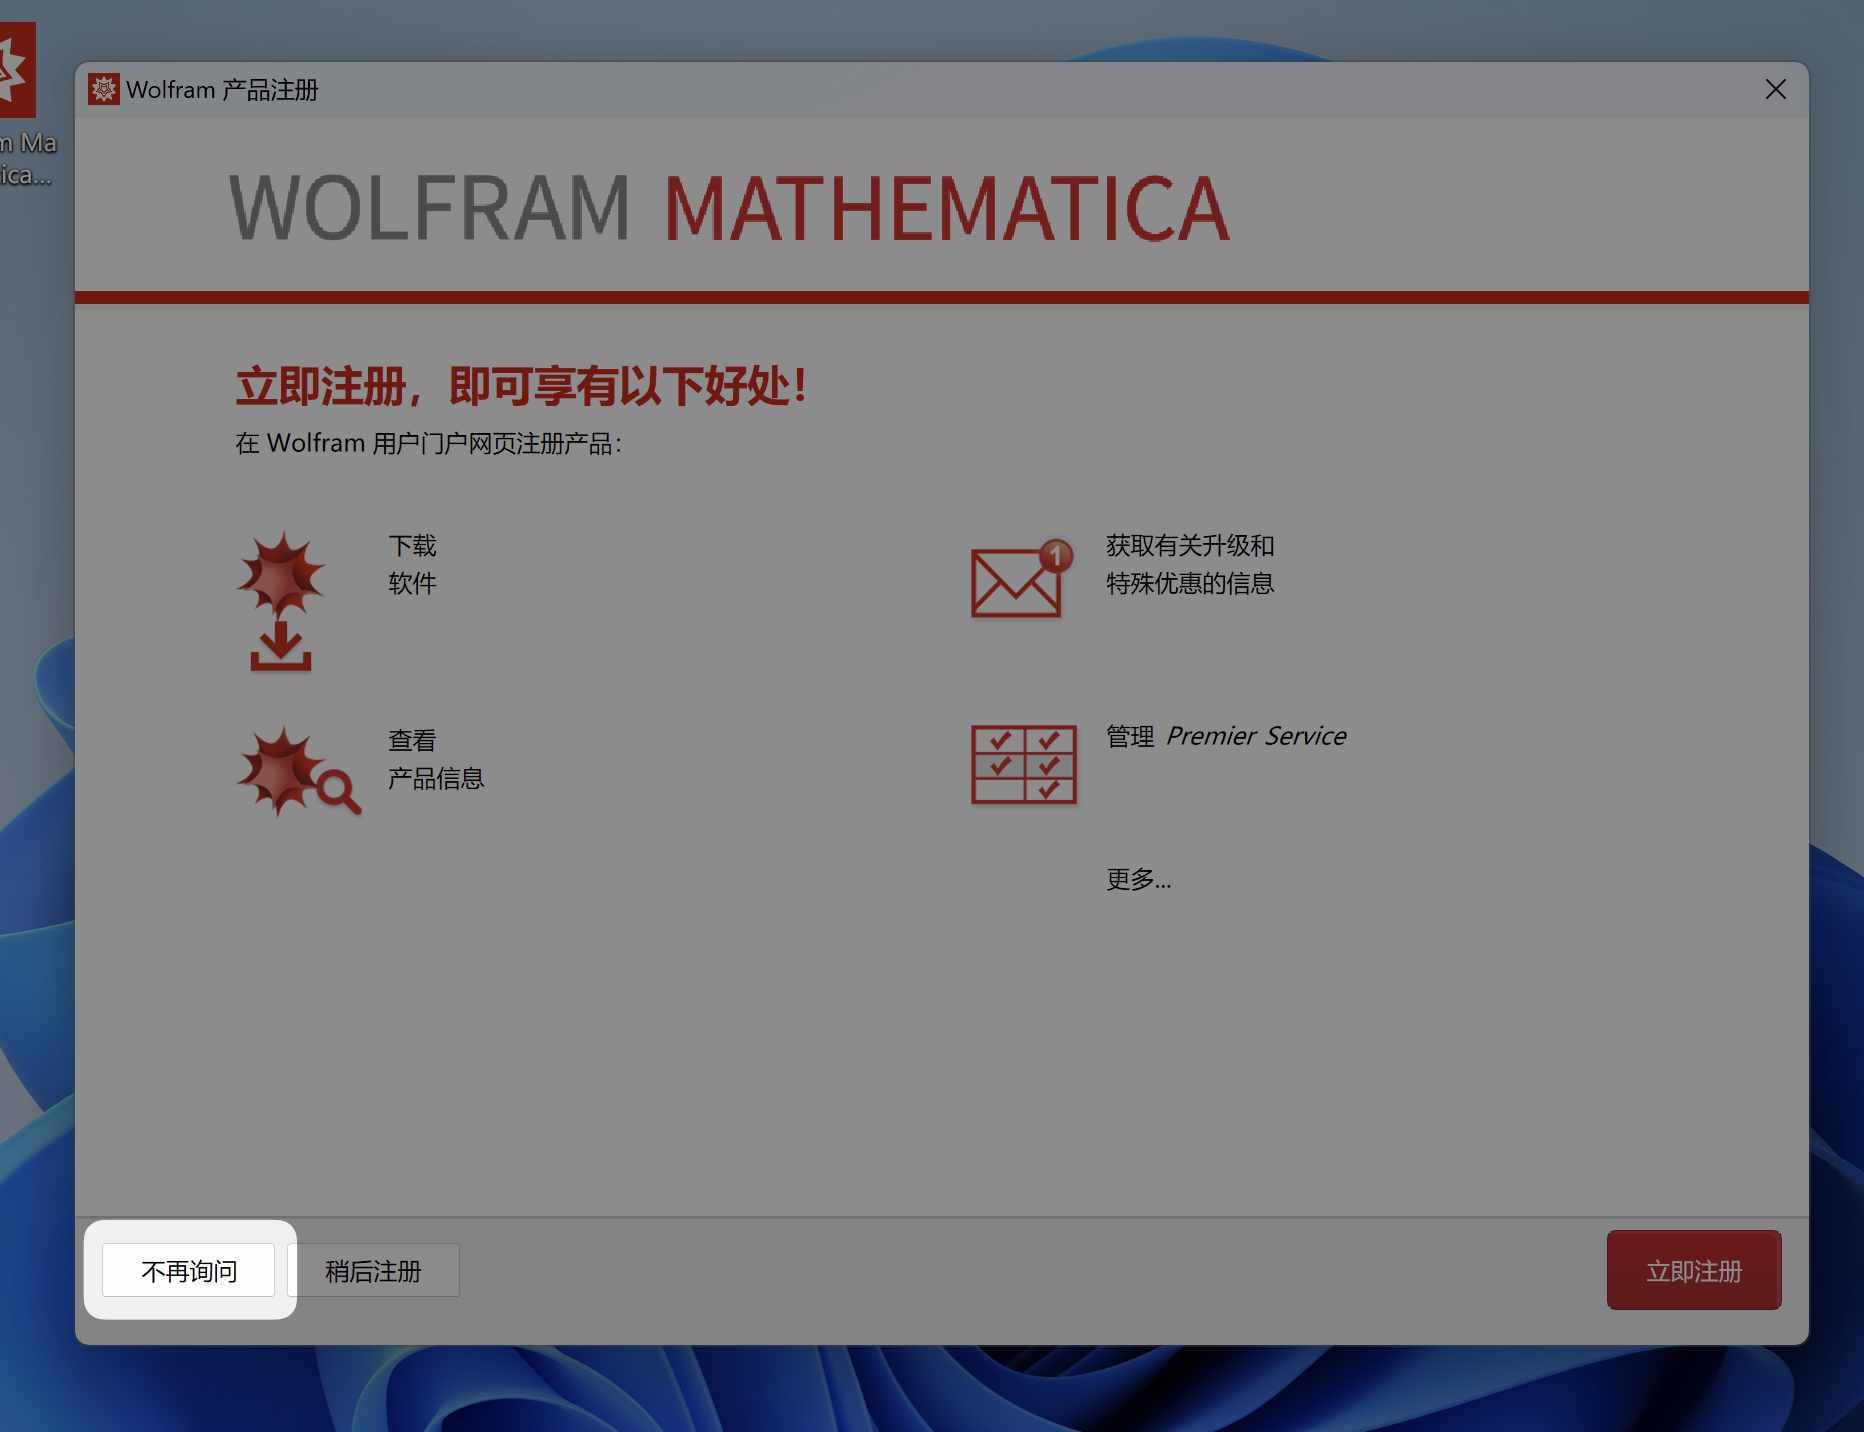 「互联网速记」也许是最优雅的 Wolfram Mathematica 破解方式 - 10